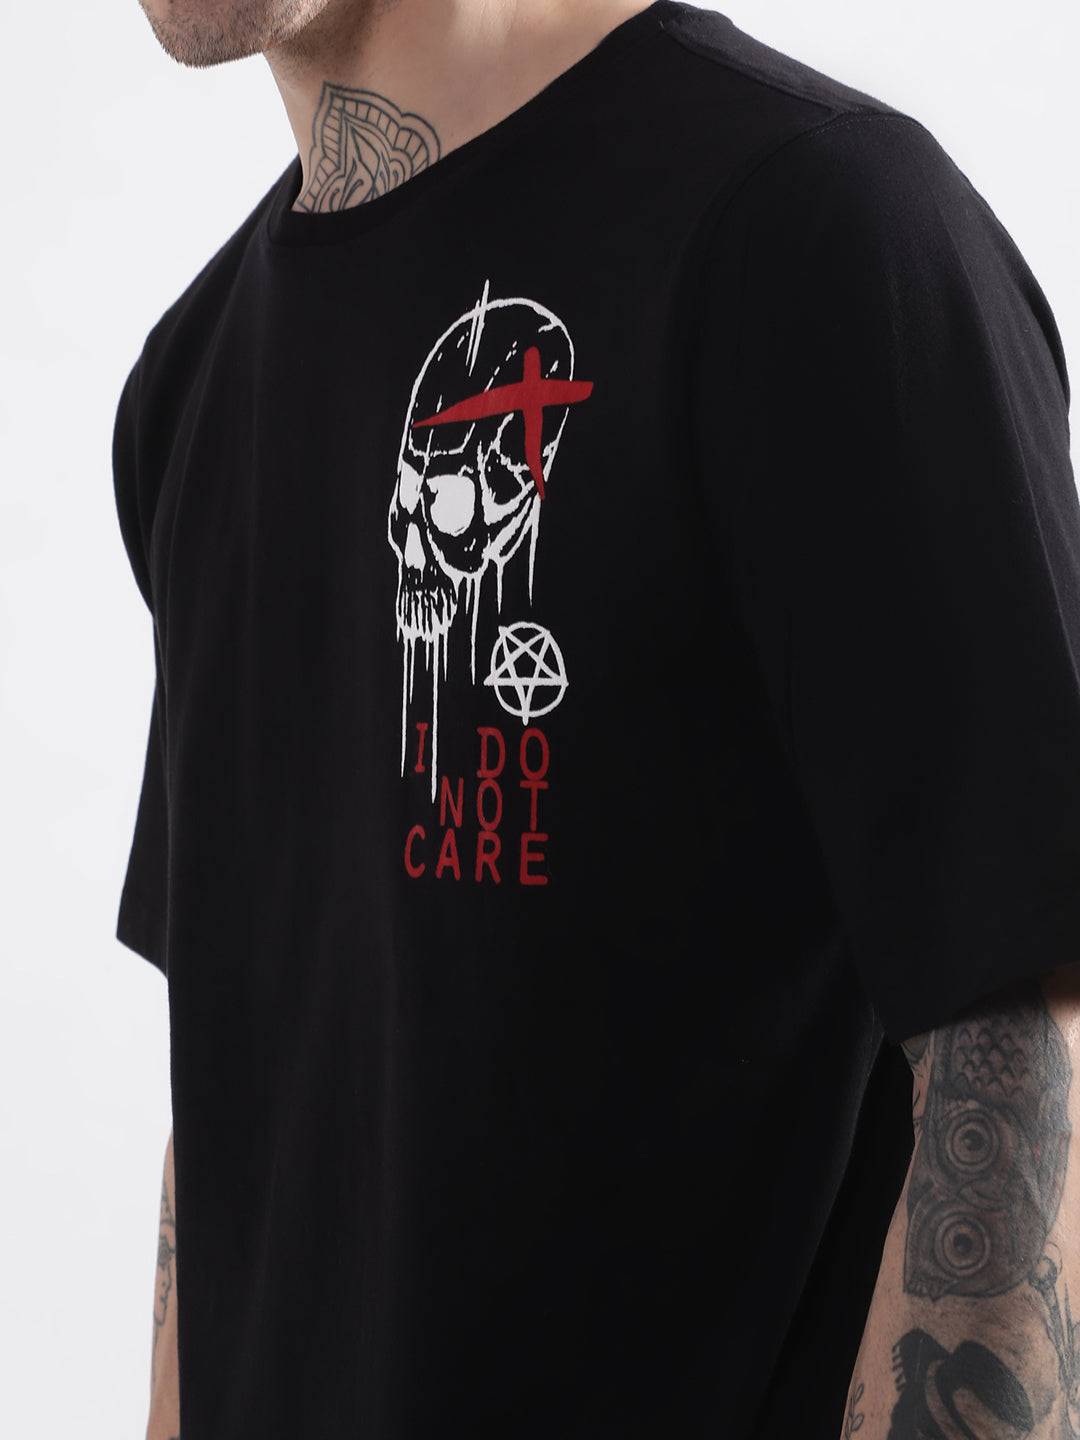 Punk I-DO-NOT-CARE Black Oversized Tshirt